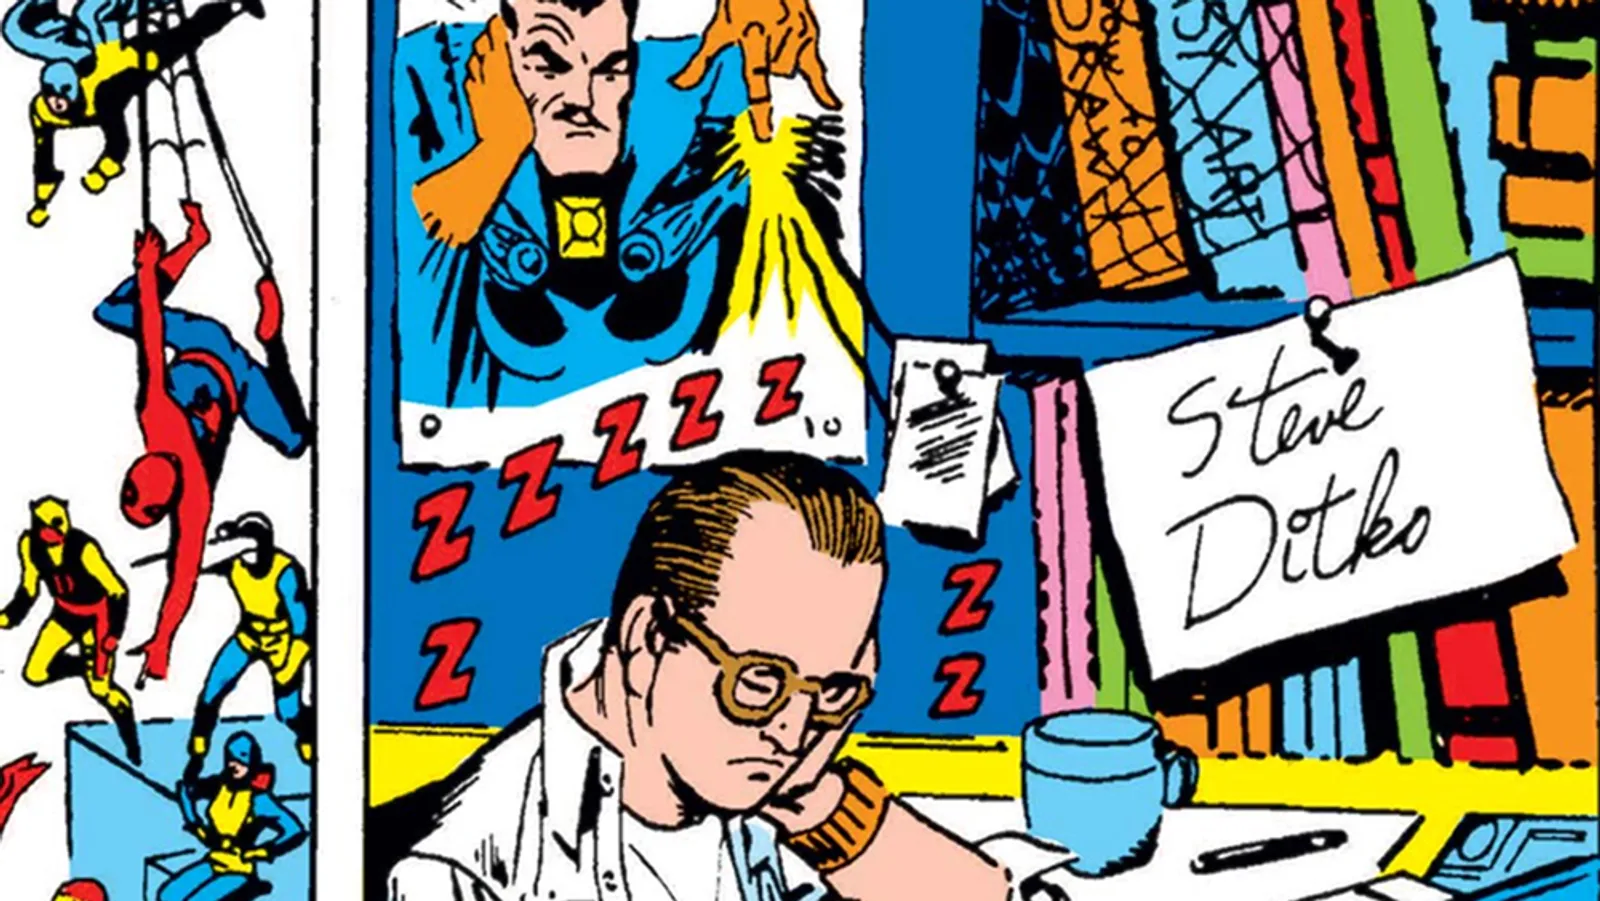 Meninggal di Usia 90, Begini Kemisteriusan Komikus Spider-Man Steve Ditko   